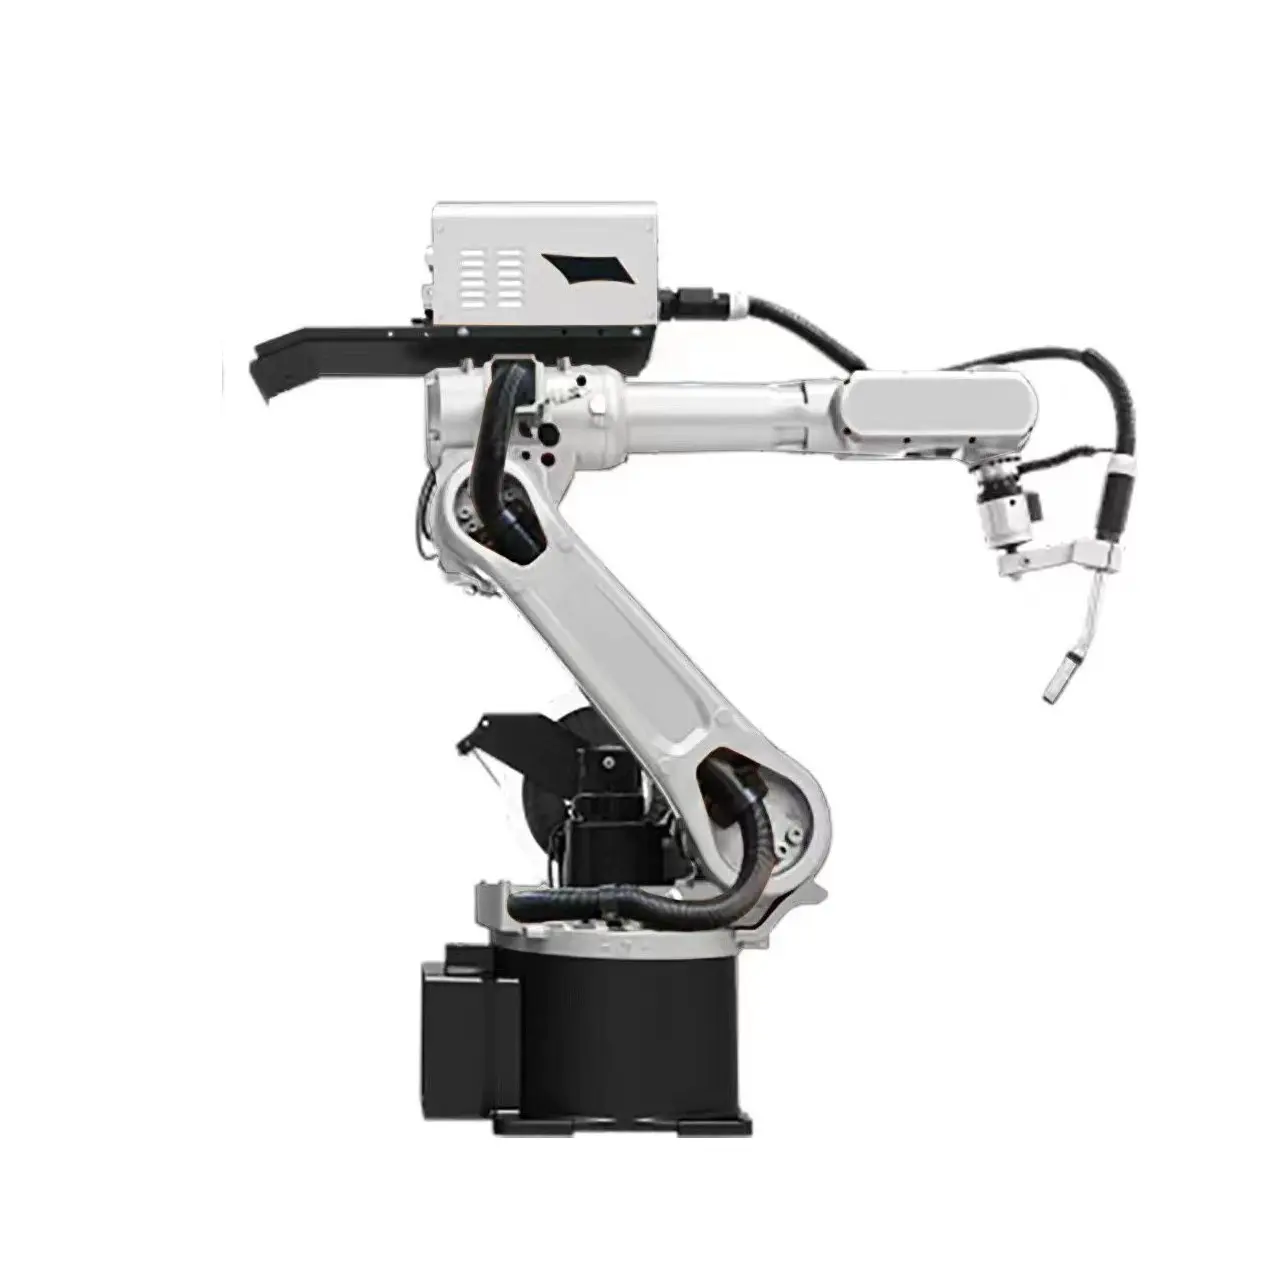 Robot recogedor, estaciones de trabajo de Robot Industrial, robot de torno cnc para soldadura por puntos, corte, manipulación y paletización